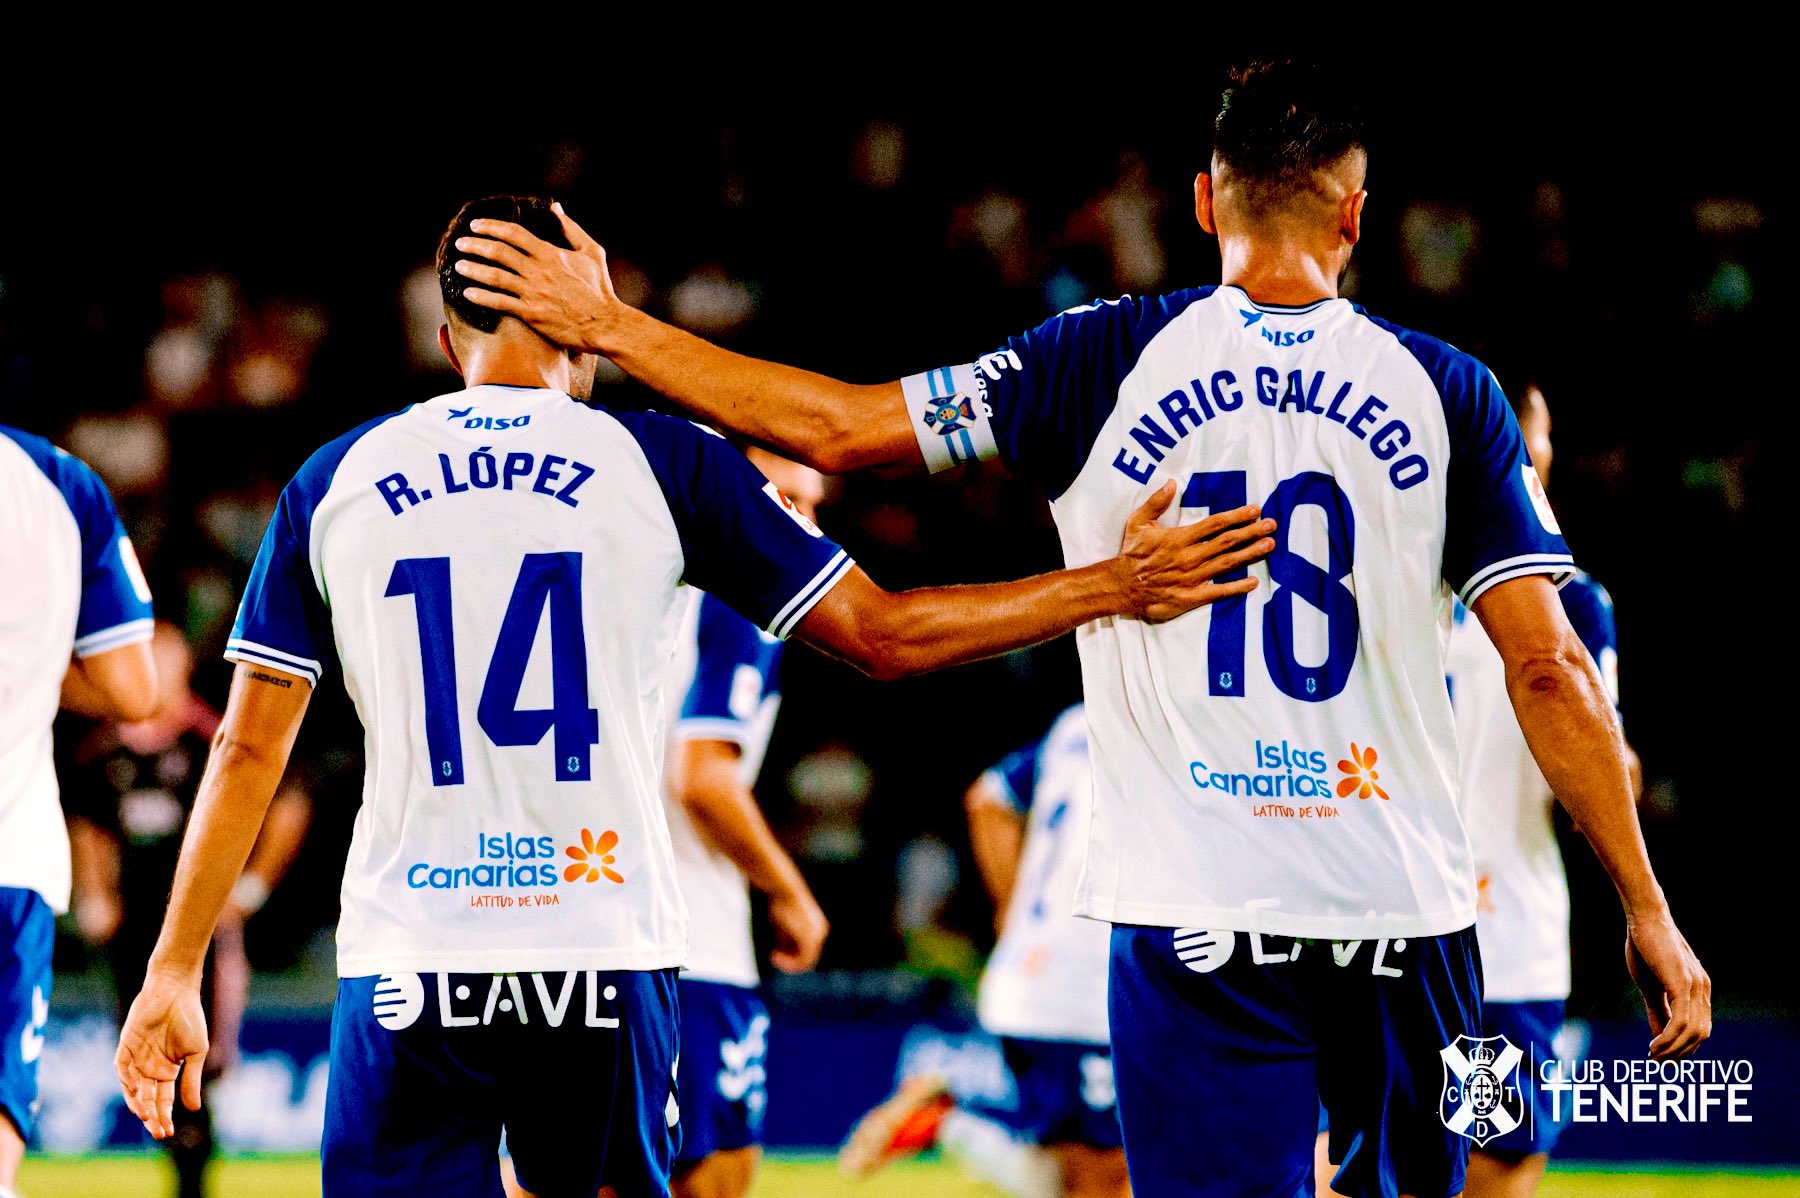 Segundo gol de Enric Gallego y Roberto López y primera asistencia del propio Enric